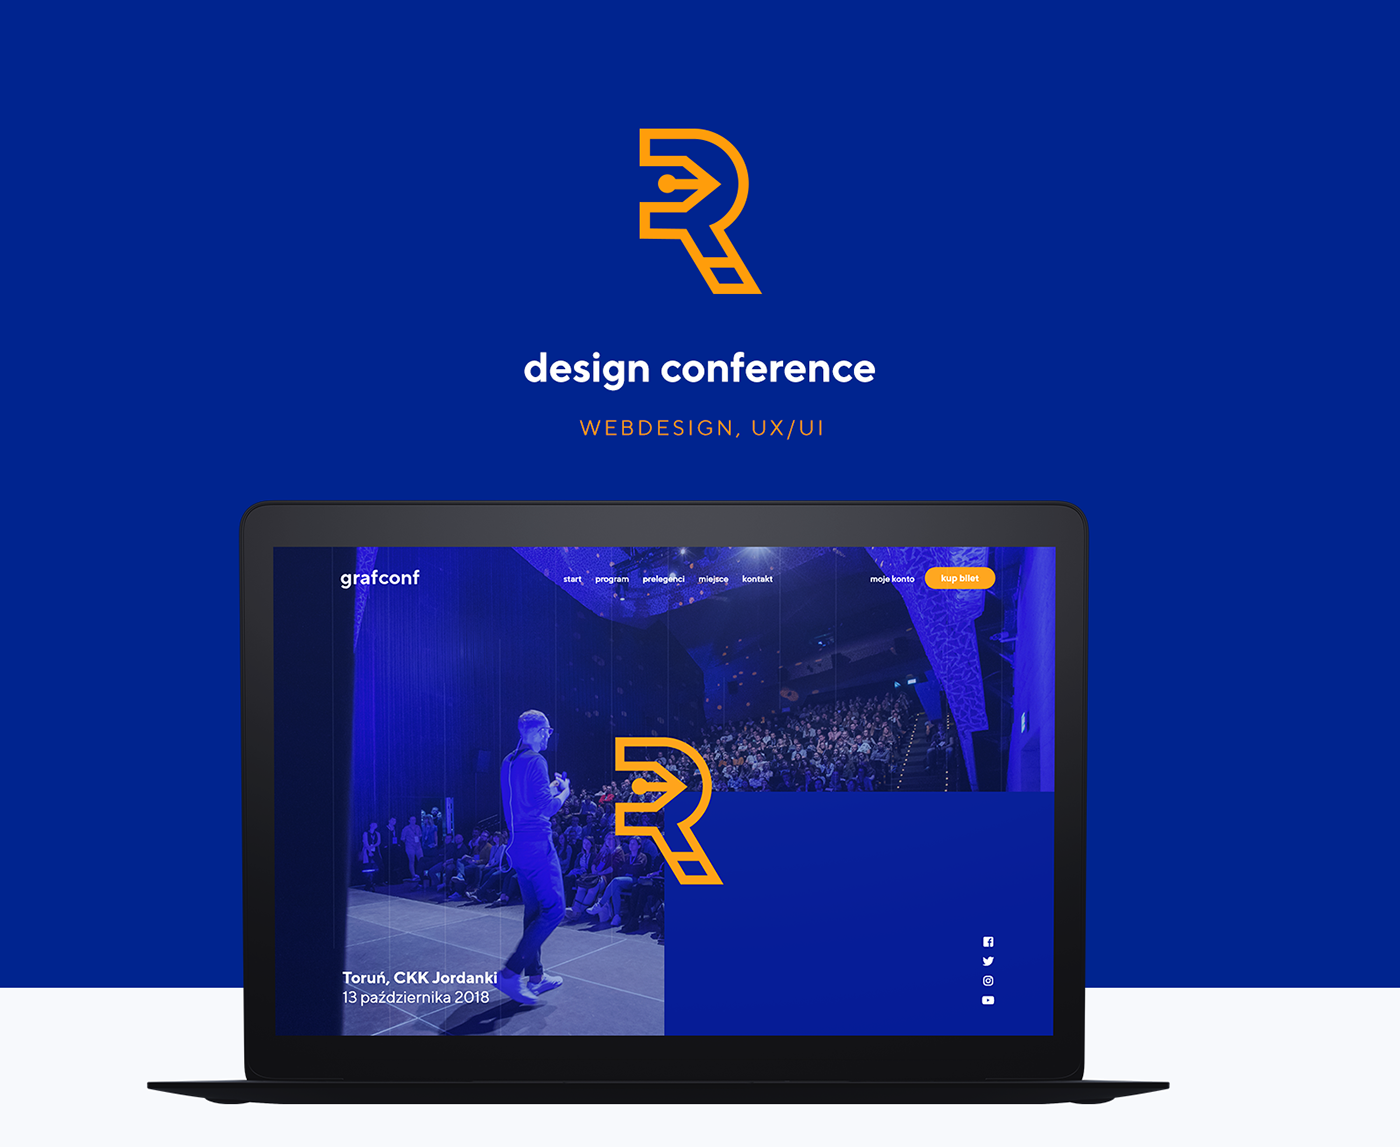 design conference blue orange black animation  MadeWithAdobeXd UI ux Website